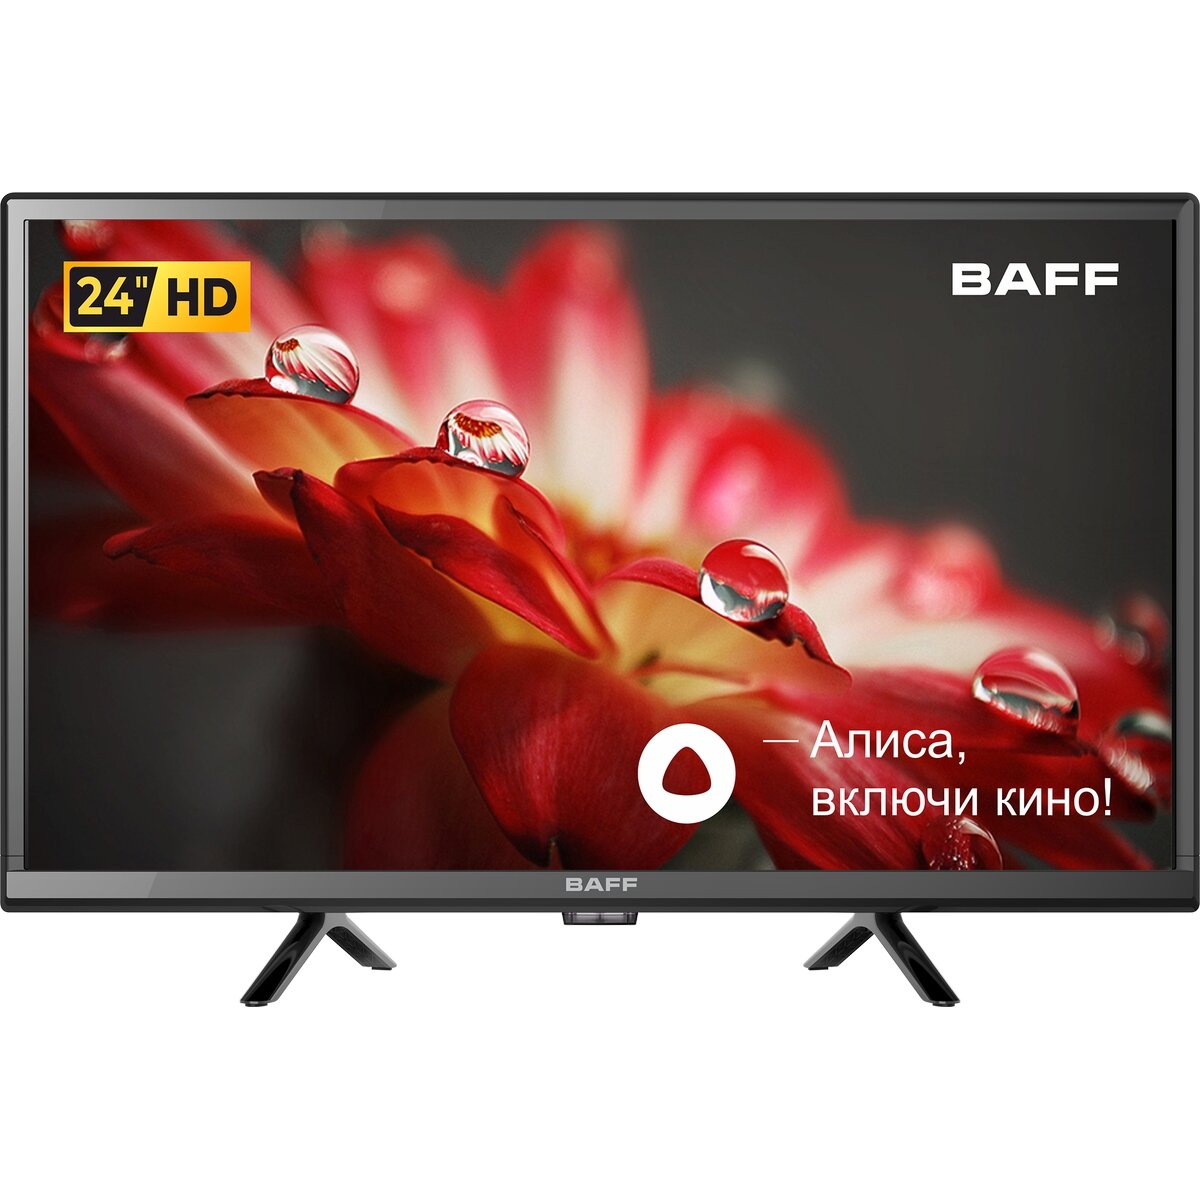 Телевизор BAFF 24Y HD-R 24 дюйма HD Smart TV голосовое управление Алиса Wi-Fi черный